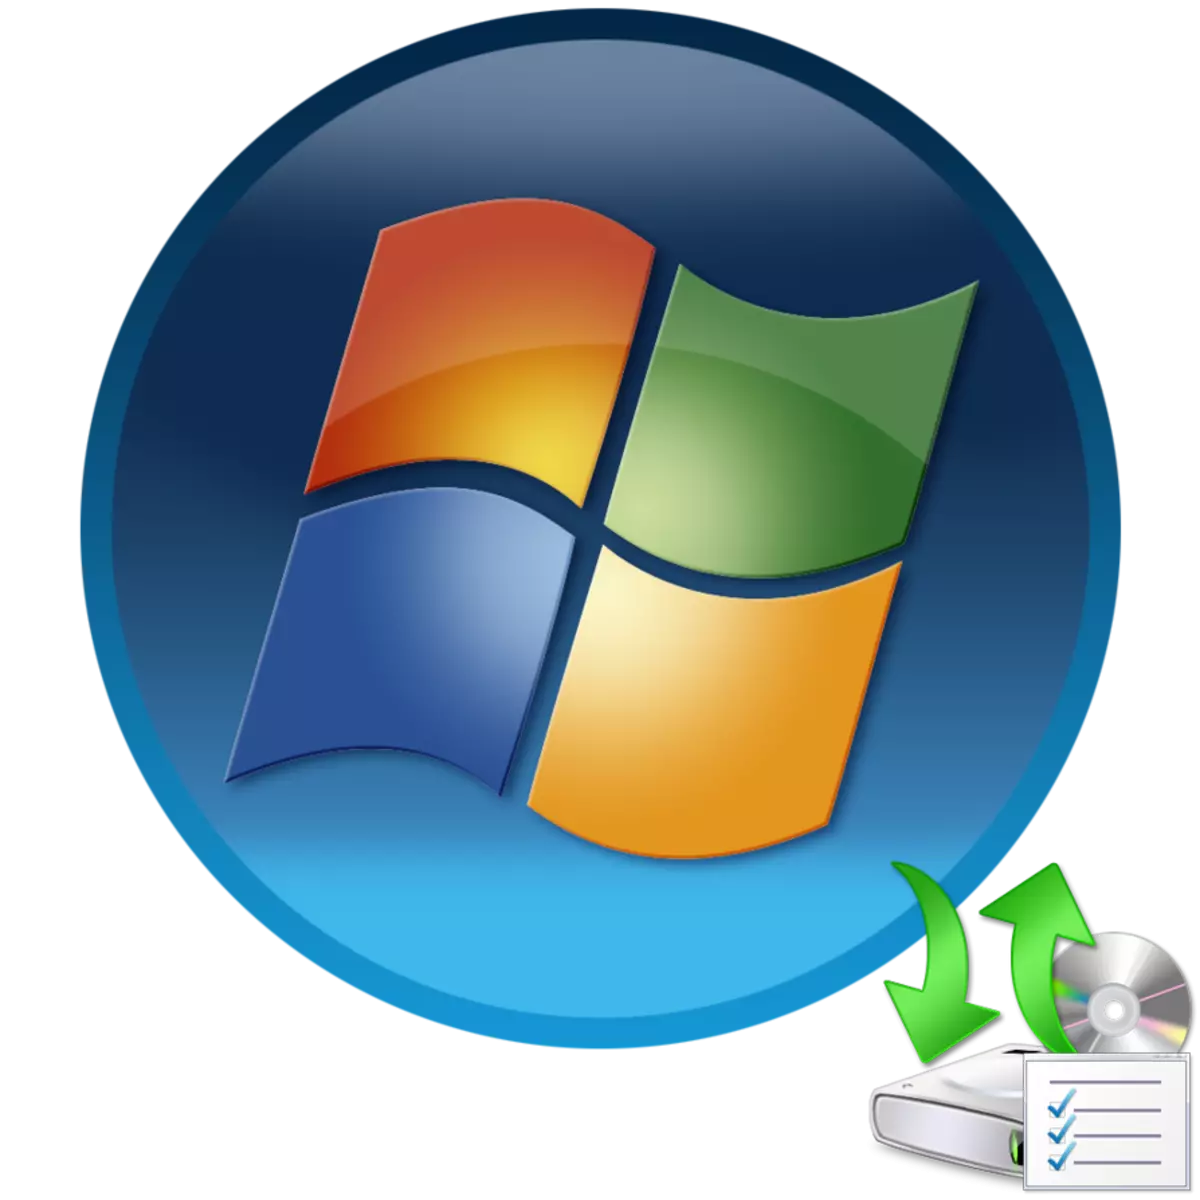 Instalace ovladačů v systému Windows 7